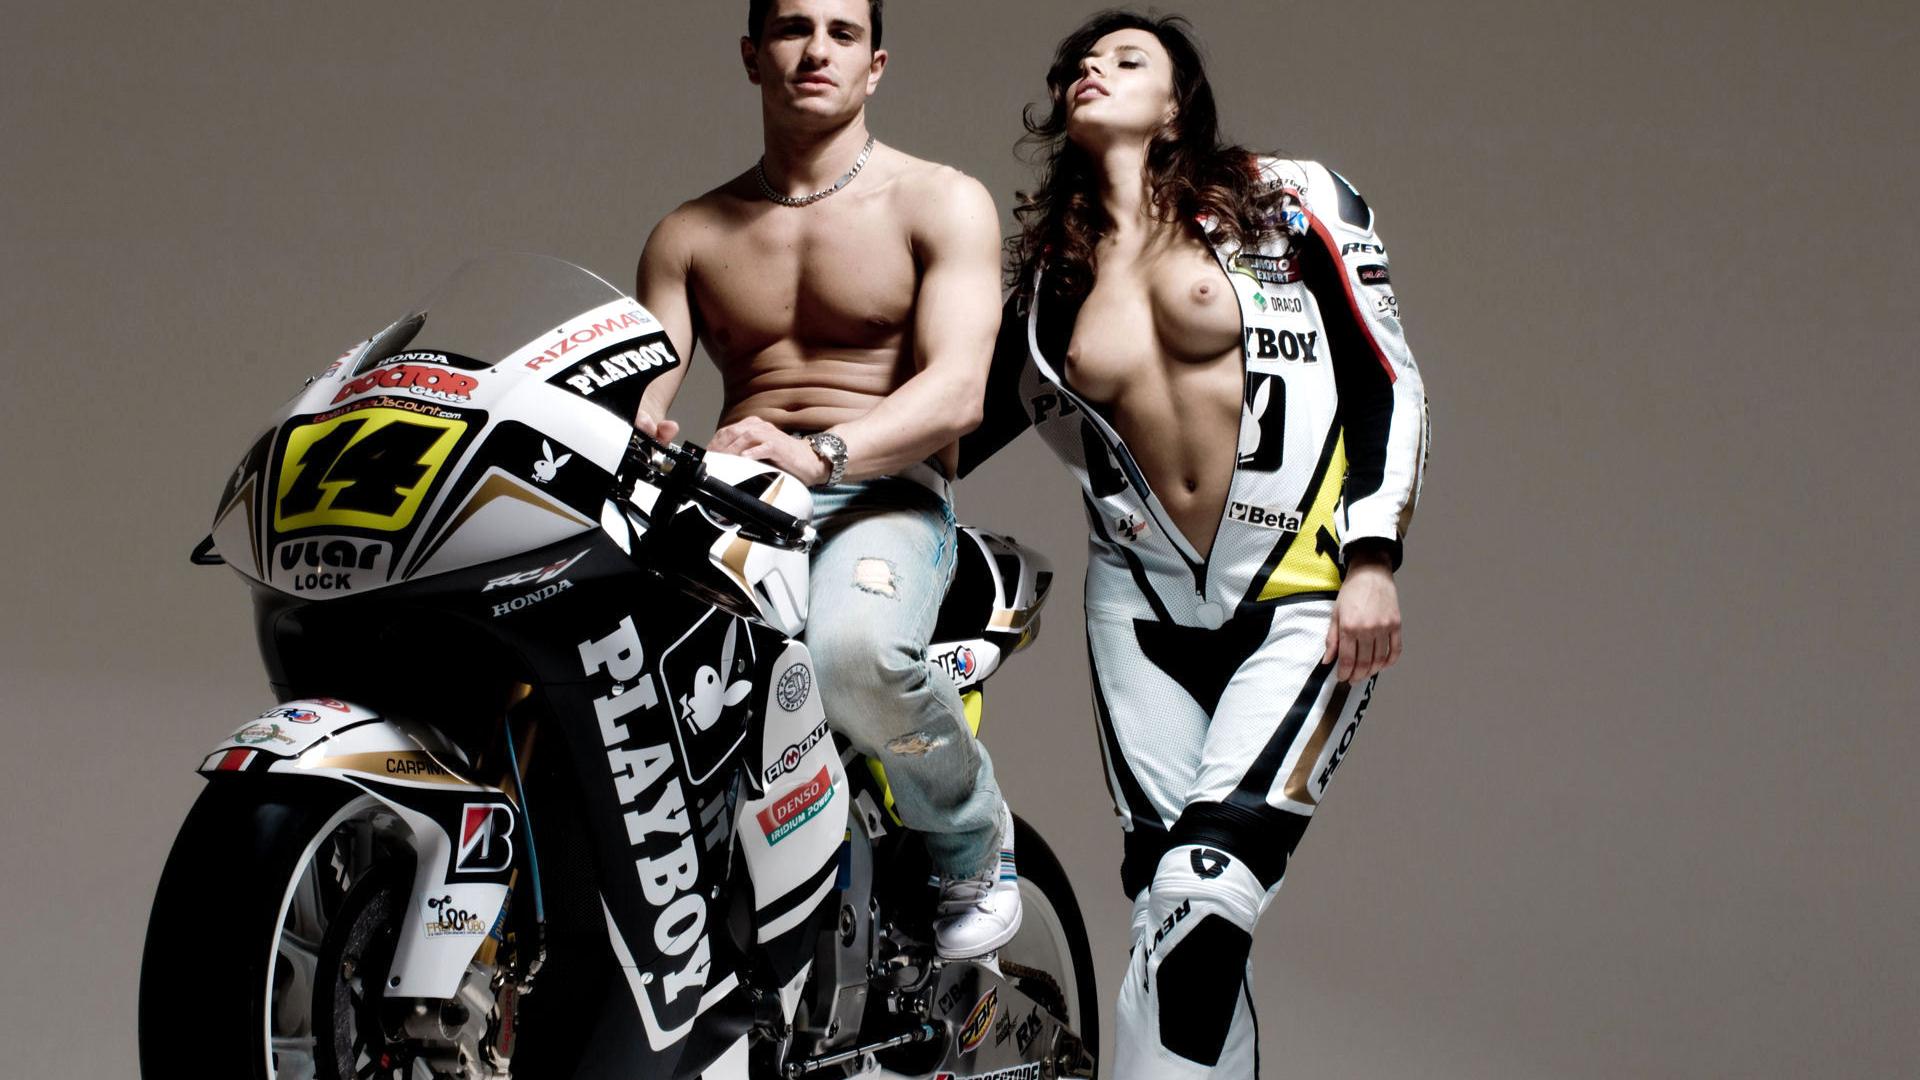 Мотоцикл, мужчина, девушка с голой грудью, костюмы 1920x1080